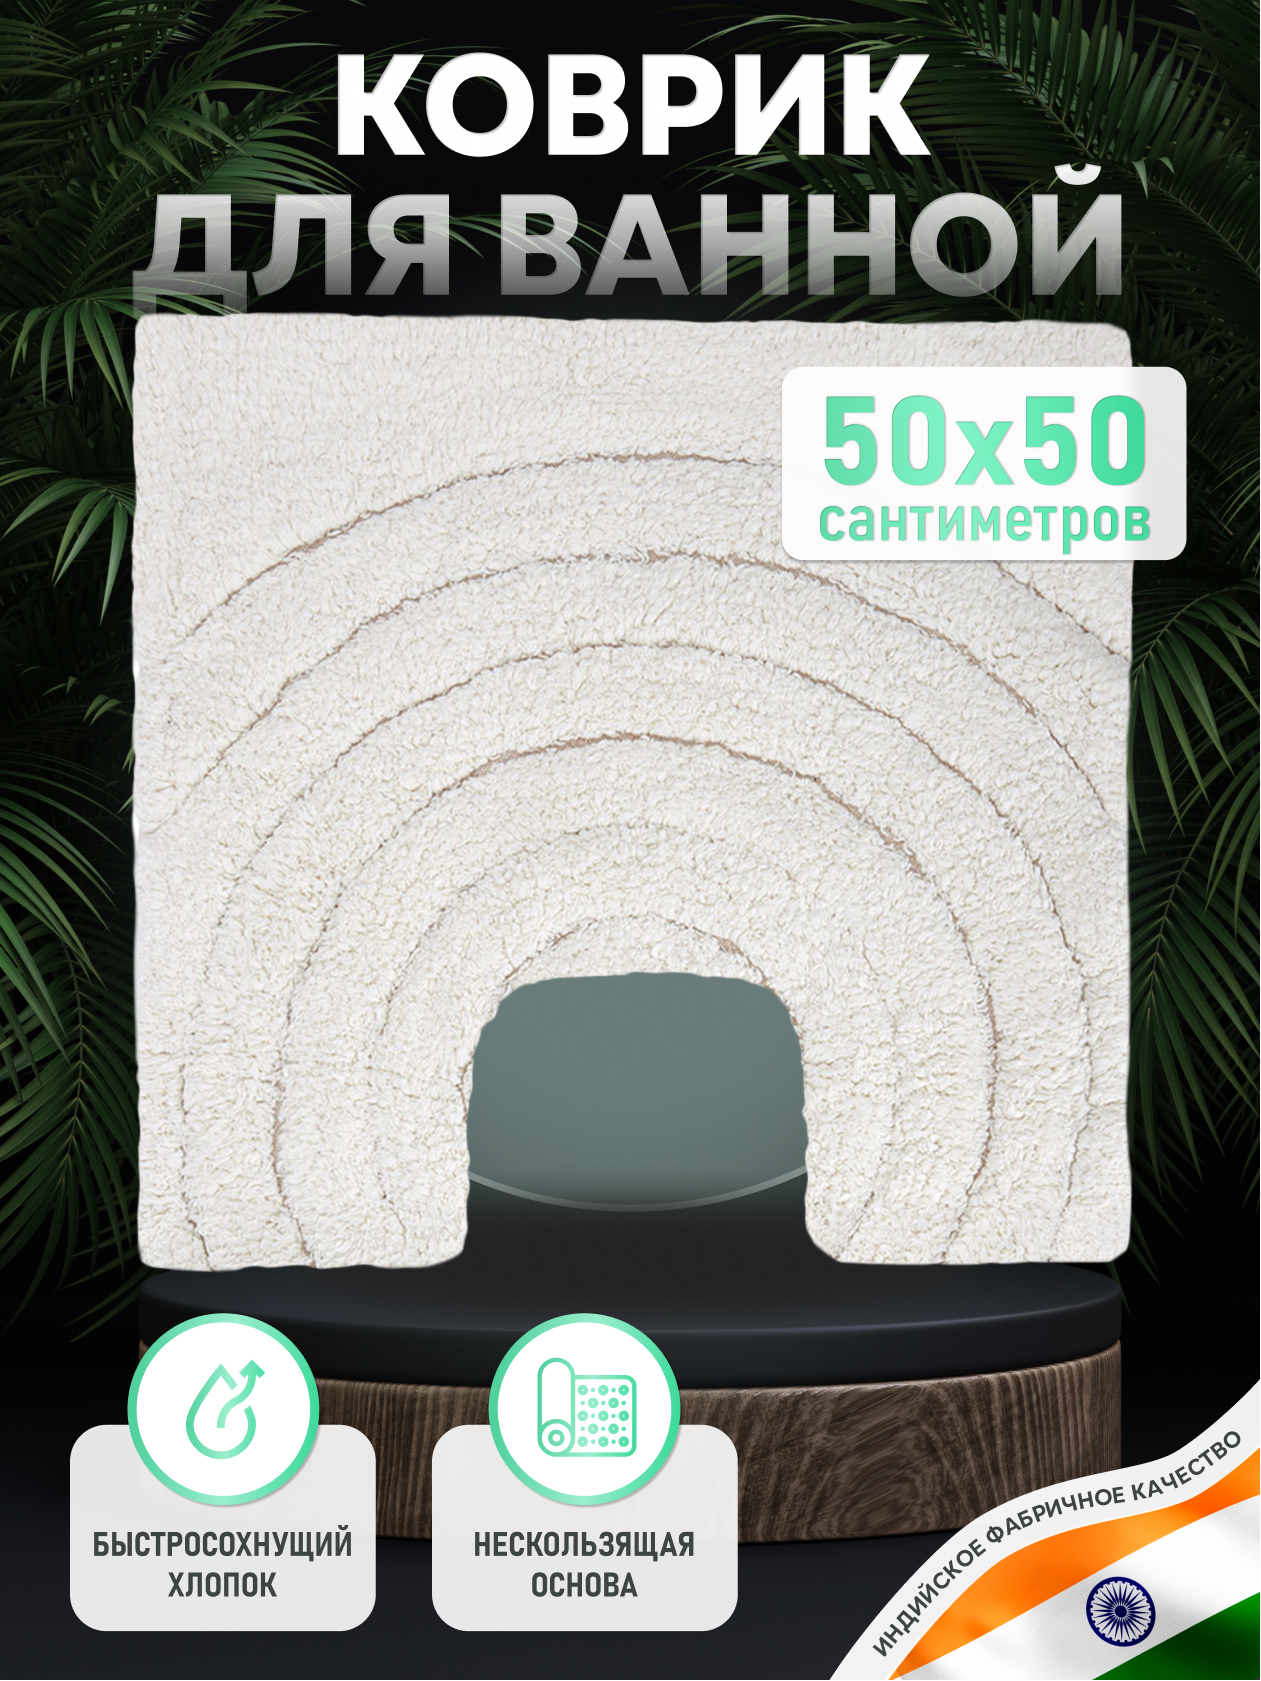 93801974 Коврик для ванной FOR-DA050-U 50BG STLM-0572111 FORA